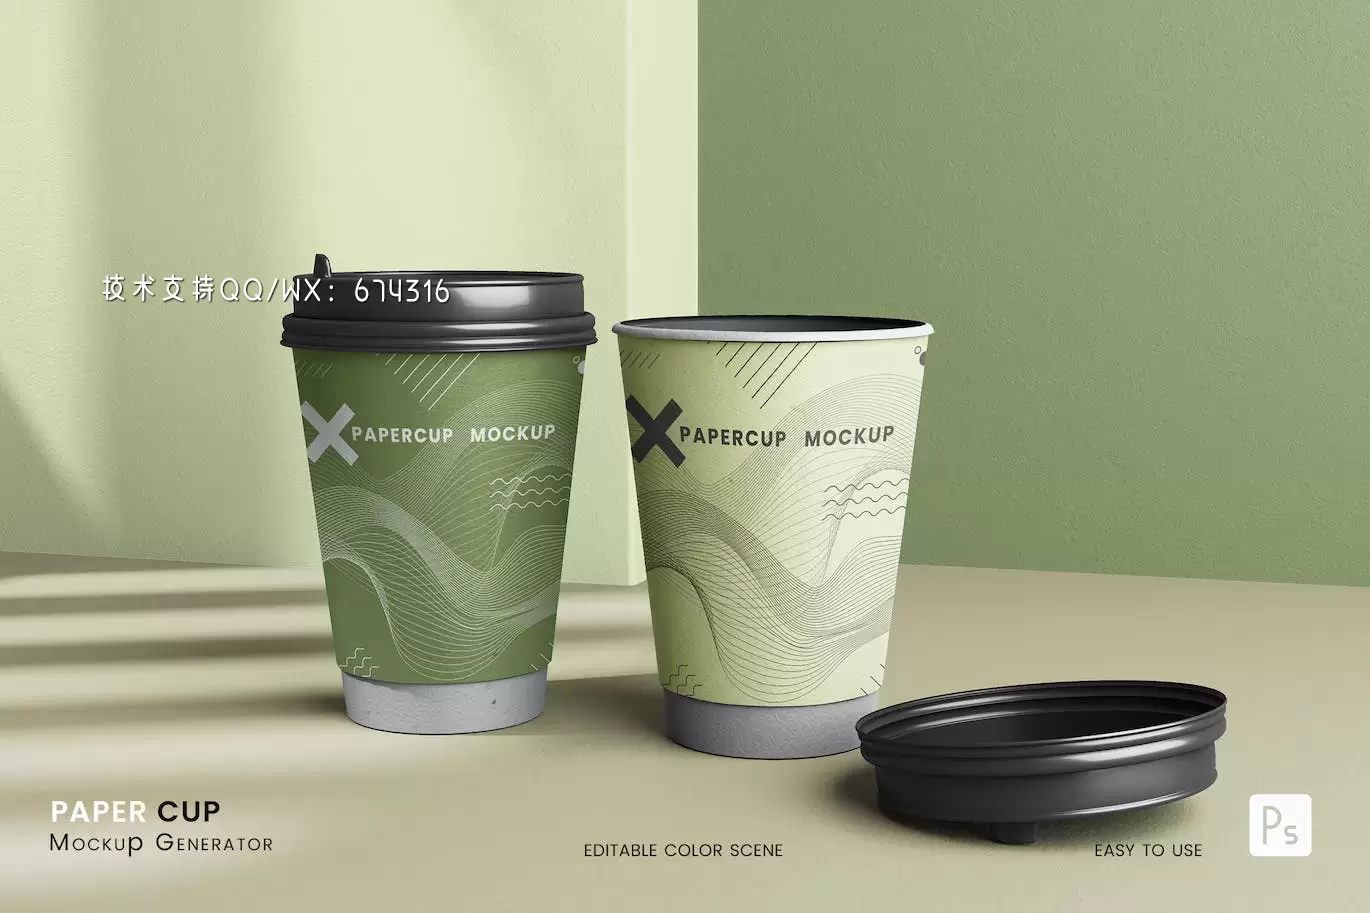 咖啡奶茶纸杯包装设计样机 (PSD)免费下载